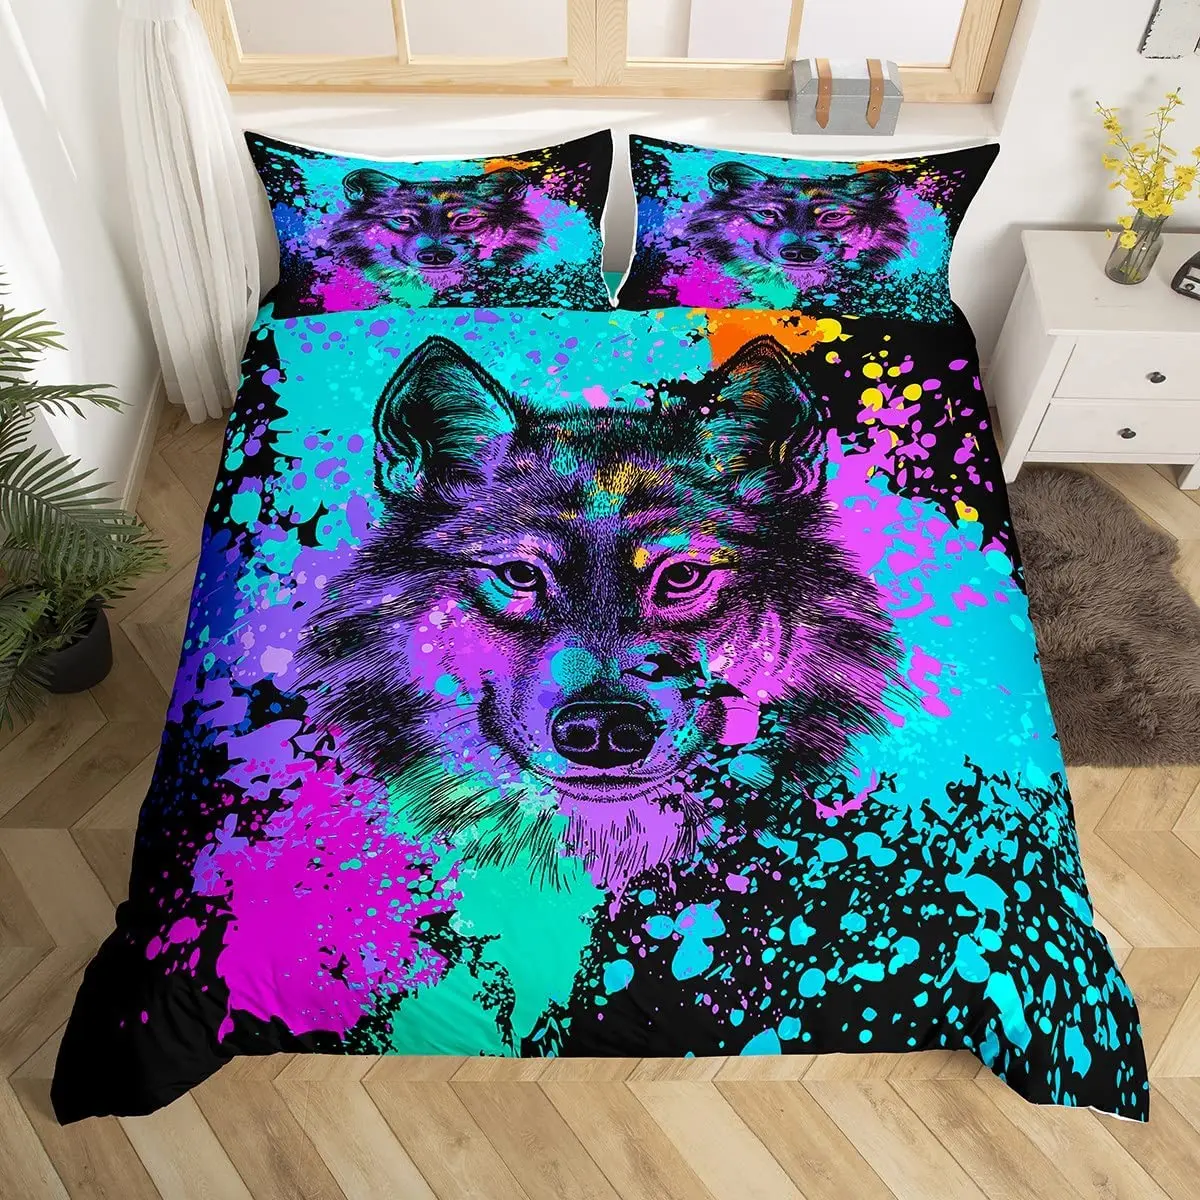 

Erosebridal Wolf Bedding Set Twin Size Tie Dye Duvet Cover Safari Animals Print Comforter Cover for Kids Boys Juvenile